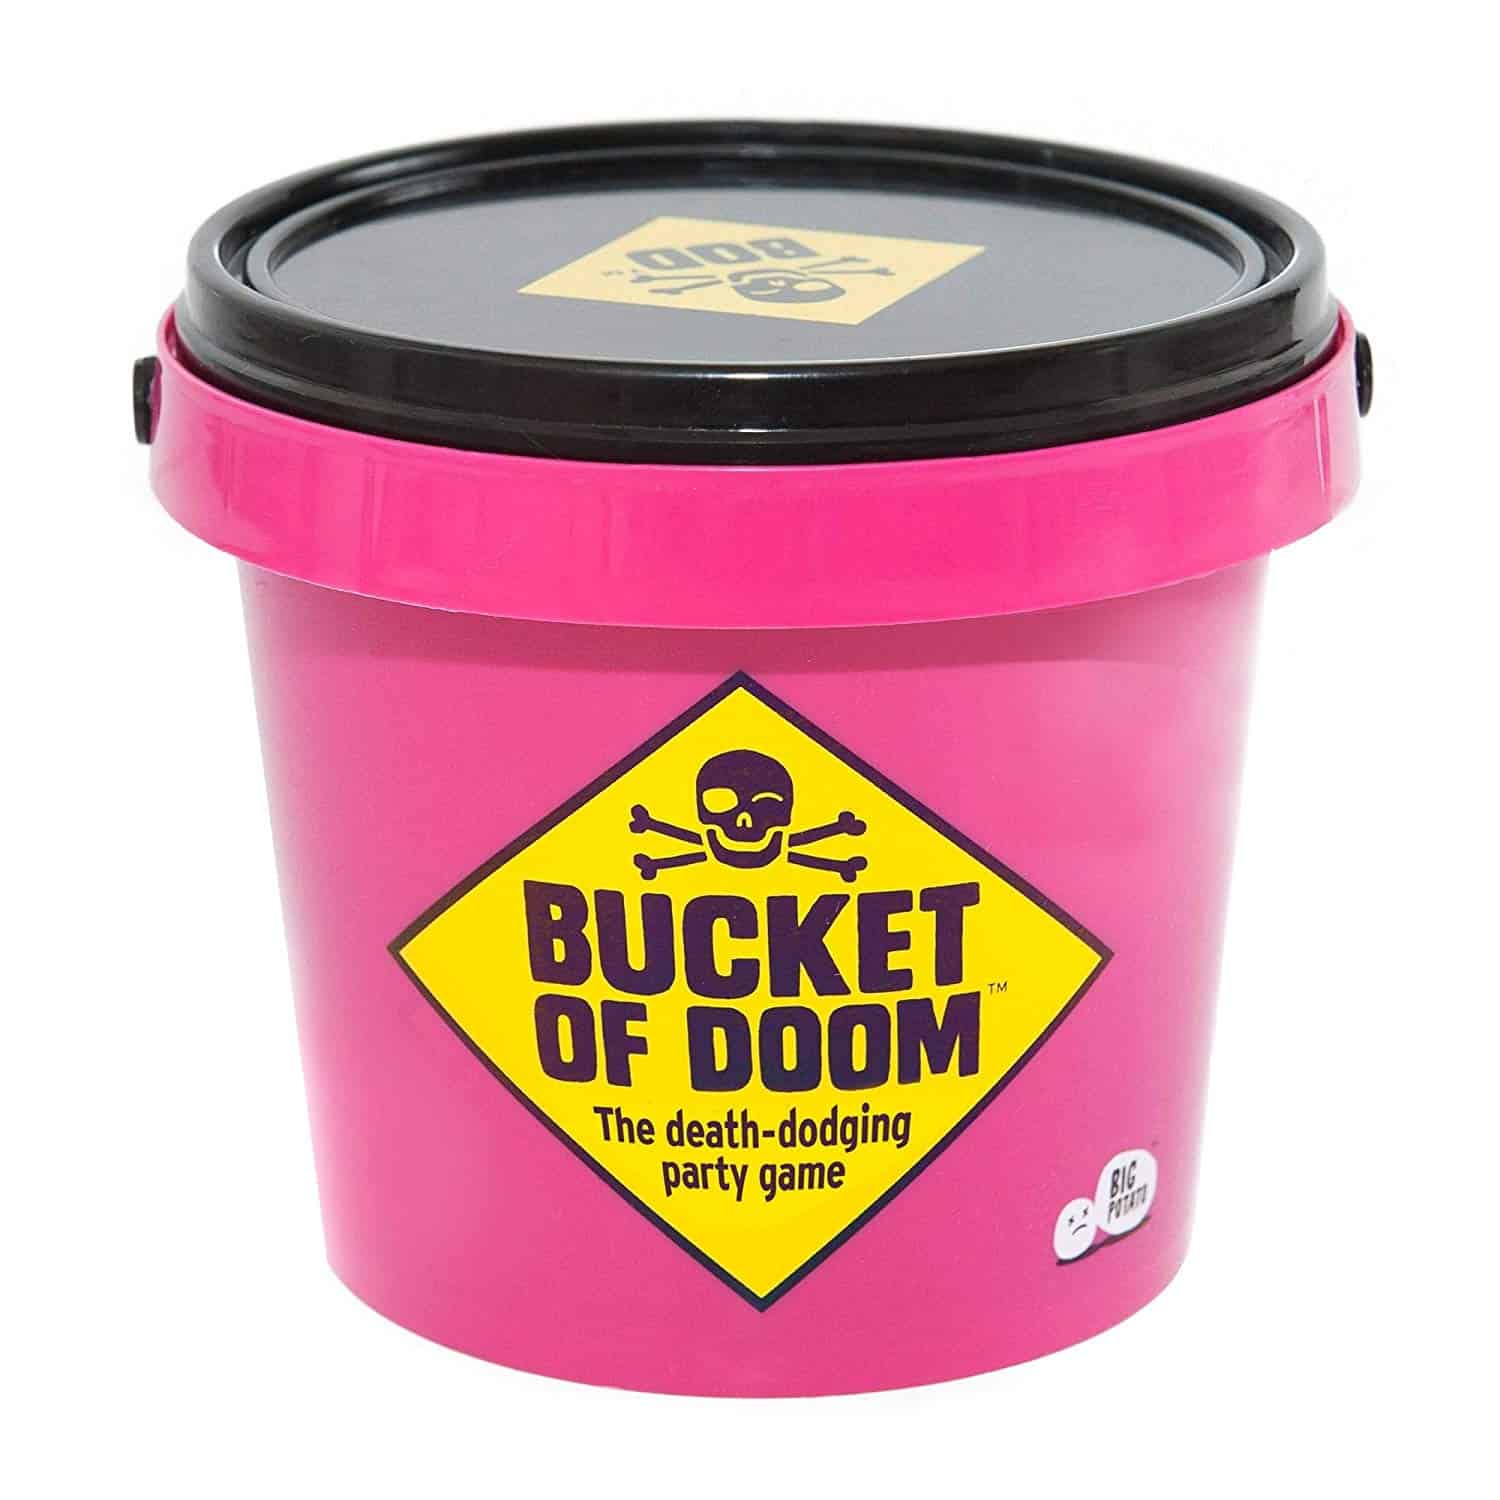 bucket of doom review